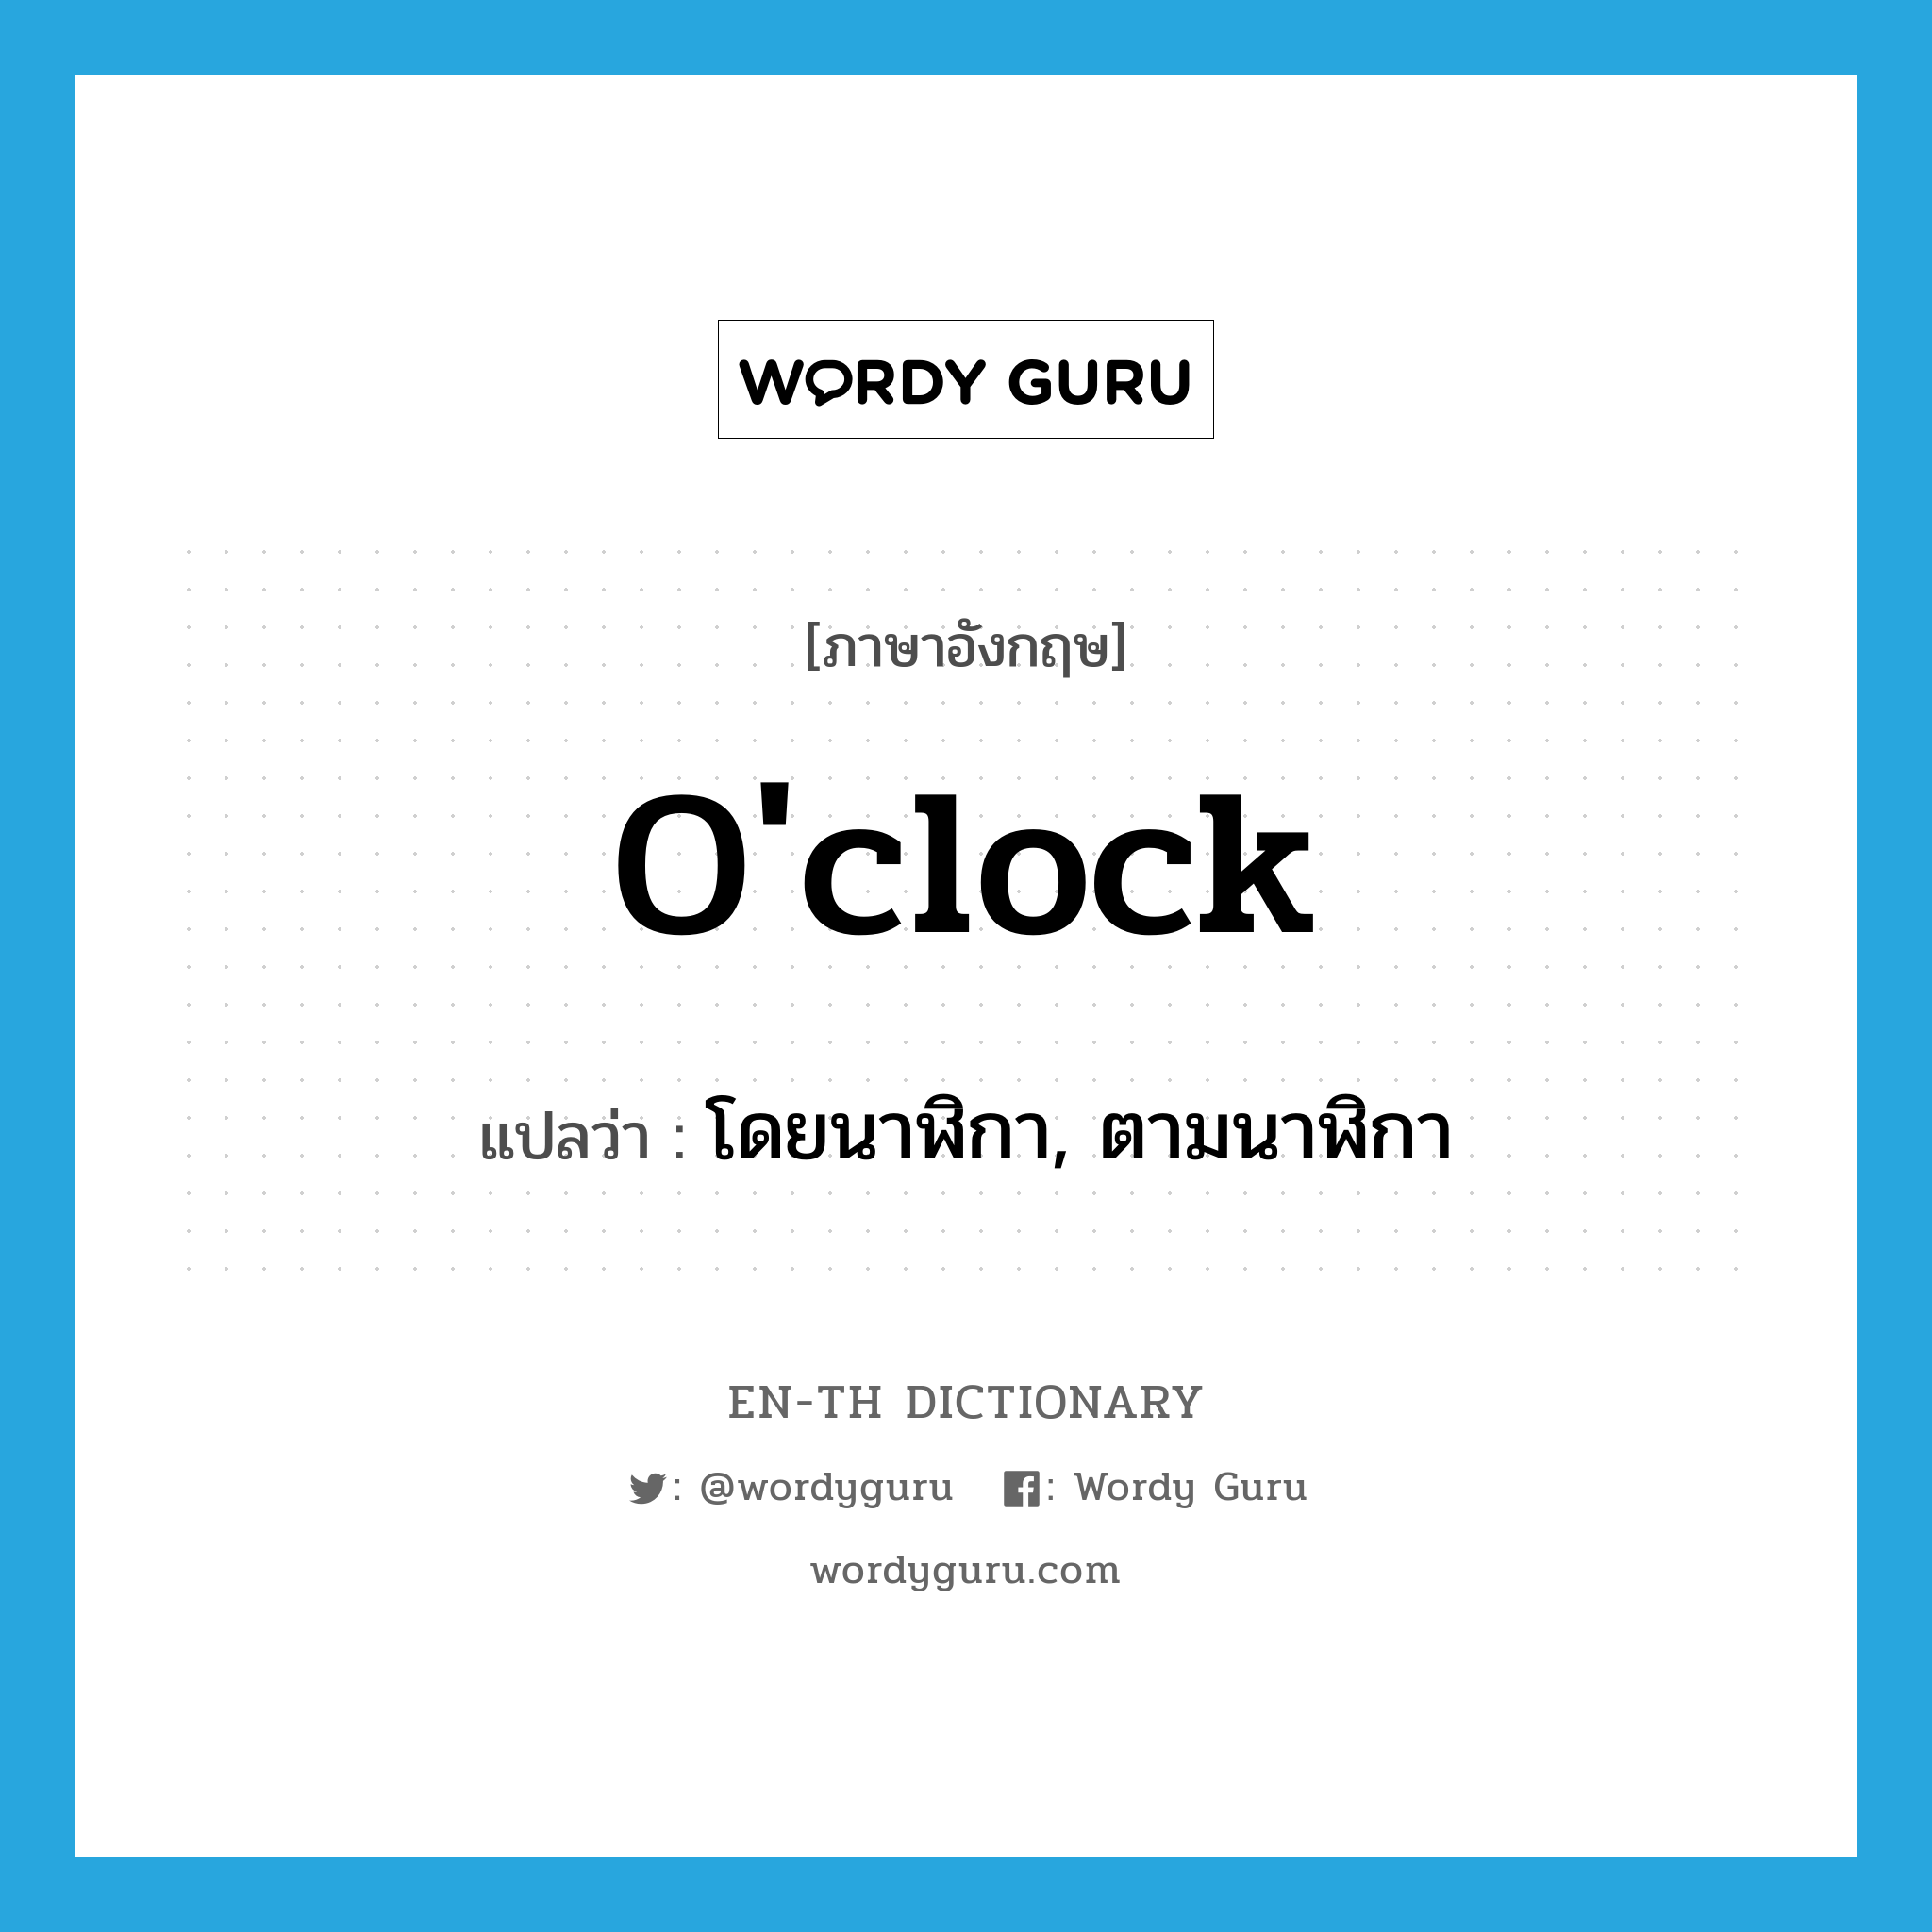 โดยนาฬิกา, ตามนาฬิกา ภาษาอังกฤษ?, คำศัพท์ภาษาอังกฤษ โดยนาฬิกา, ตามนาฬิกา แปลว่า o'clock ประเภท ADV หมวด ADV